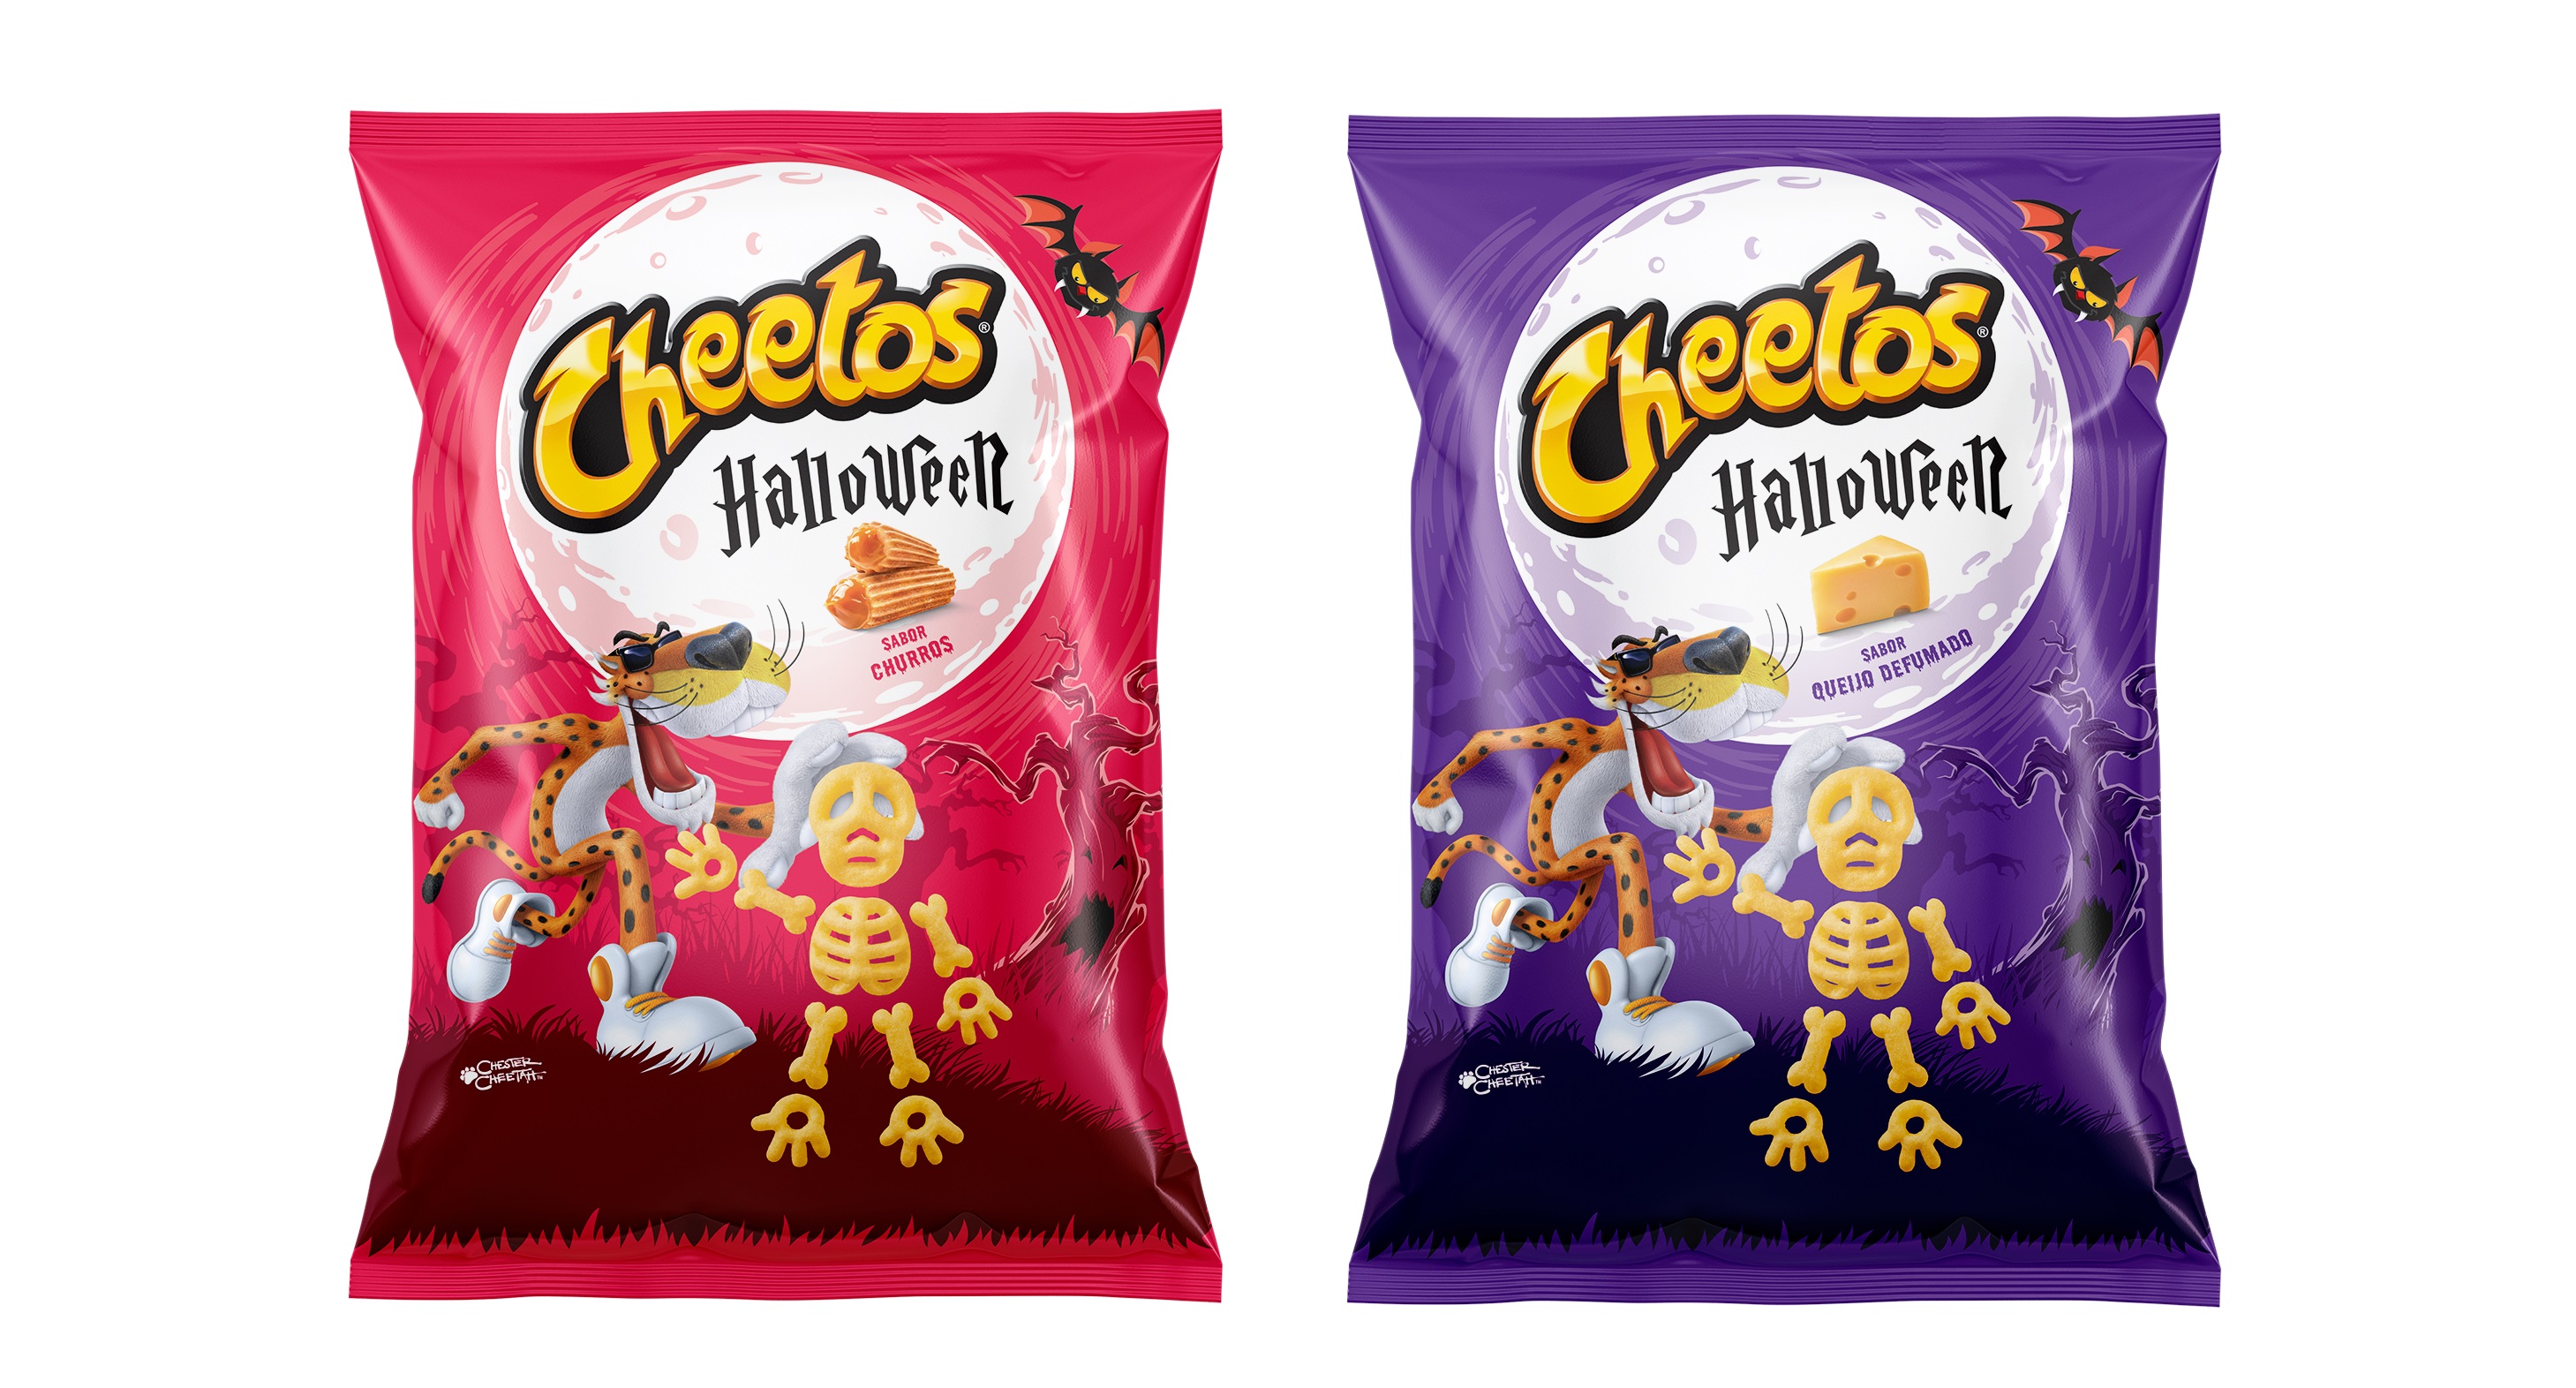 Cheetos lança snacks com formato de ossinhos para o Halloween